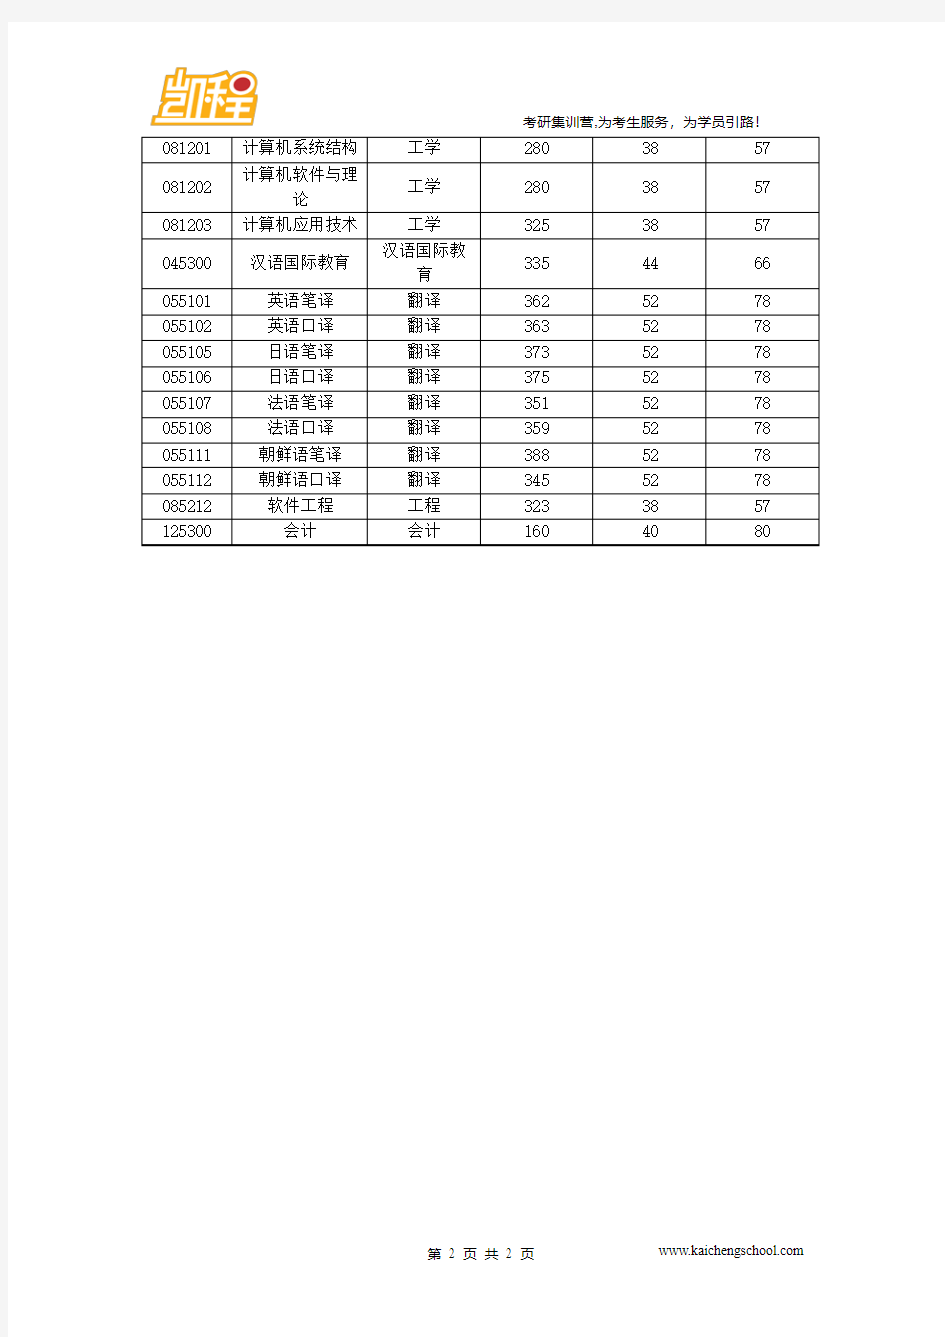 2015年北京语言大学中国古典文献学硕士复试分数线为345分